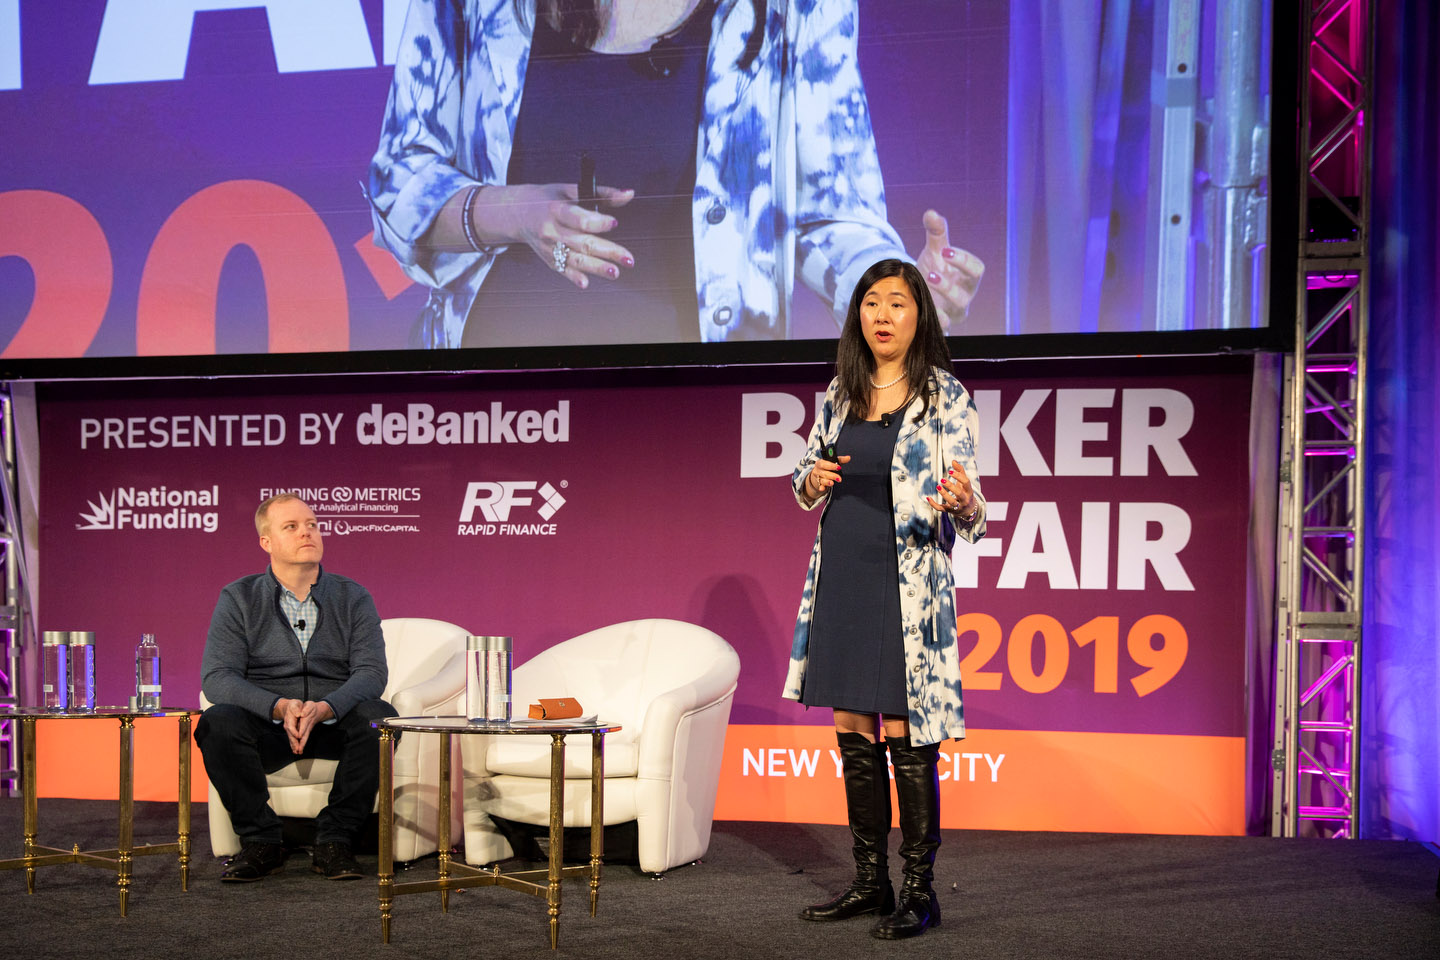 Broker Fair 2019 - Presented by deBanked - 268